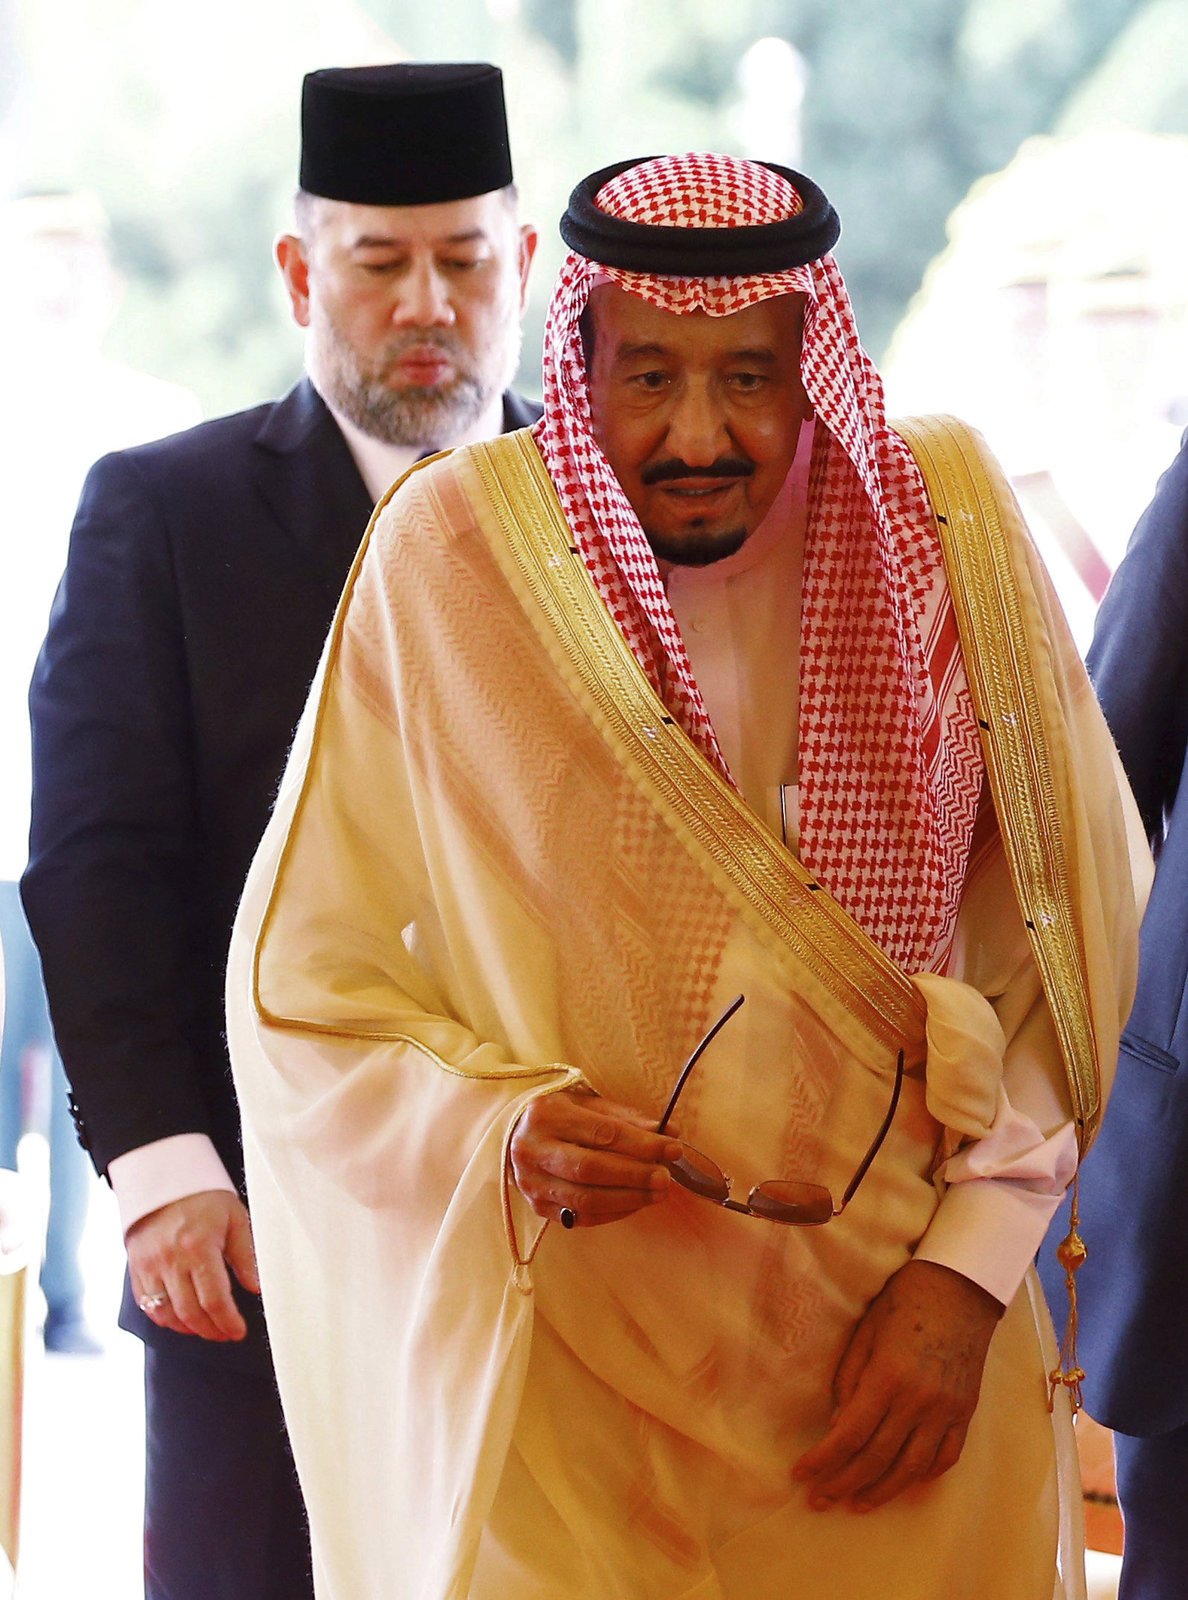 Saúdskoarabský král Salmán přicestoval do indonéské metropole Jakarty.